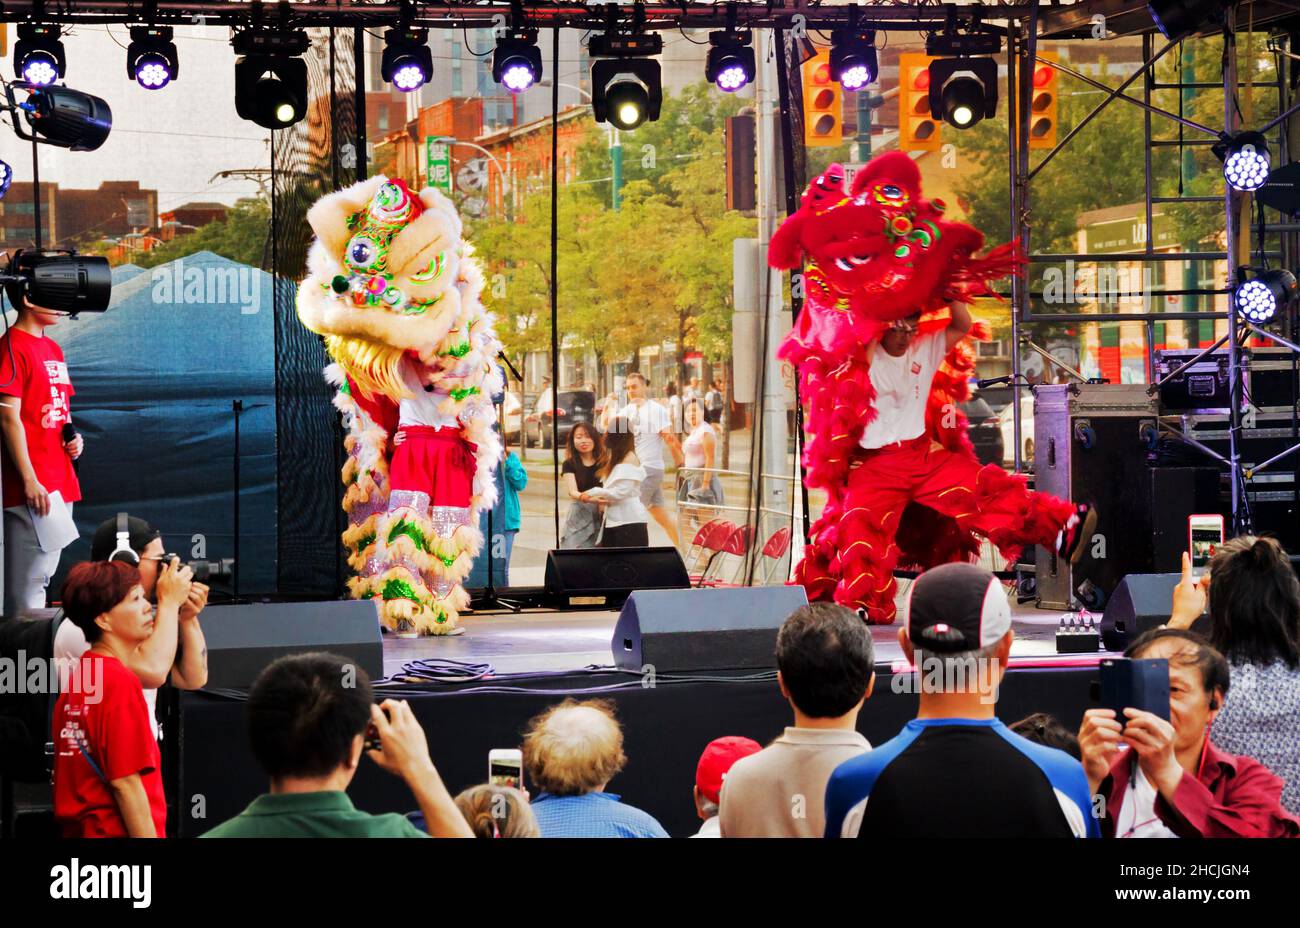 Toronto, Kanada - 08 19 2018: Das Thema des Toronto Chinatown Festivals 18th war Sprung durch das Dragons Gate. Traditionelle volkstümliche Figuren Stockfoto